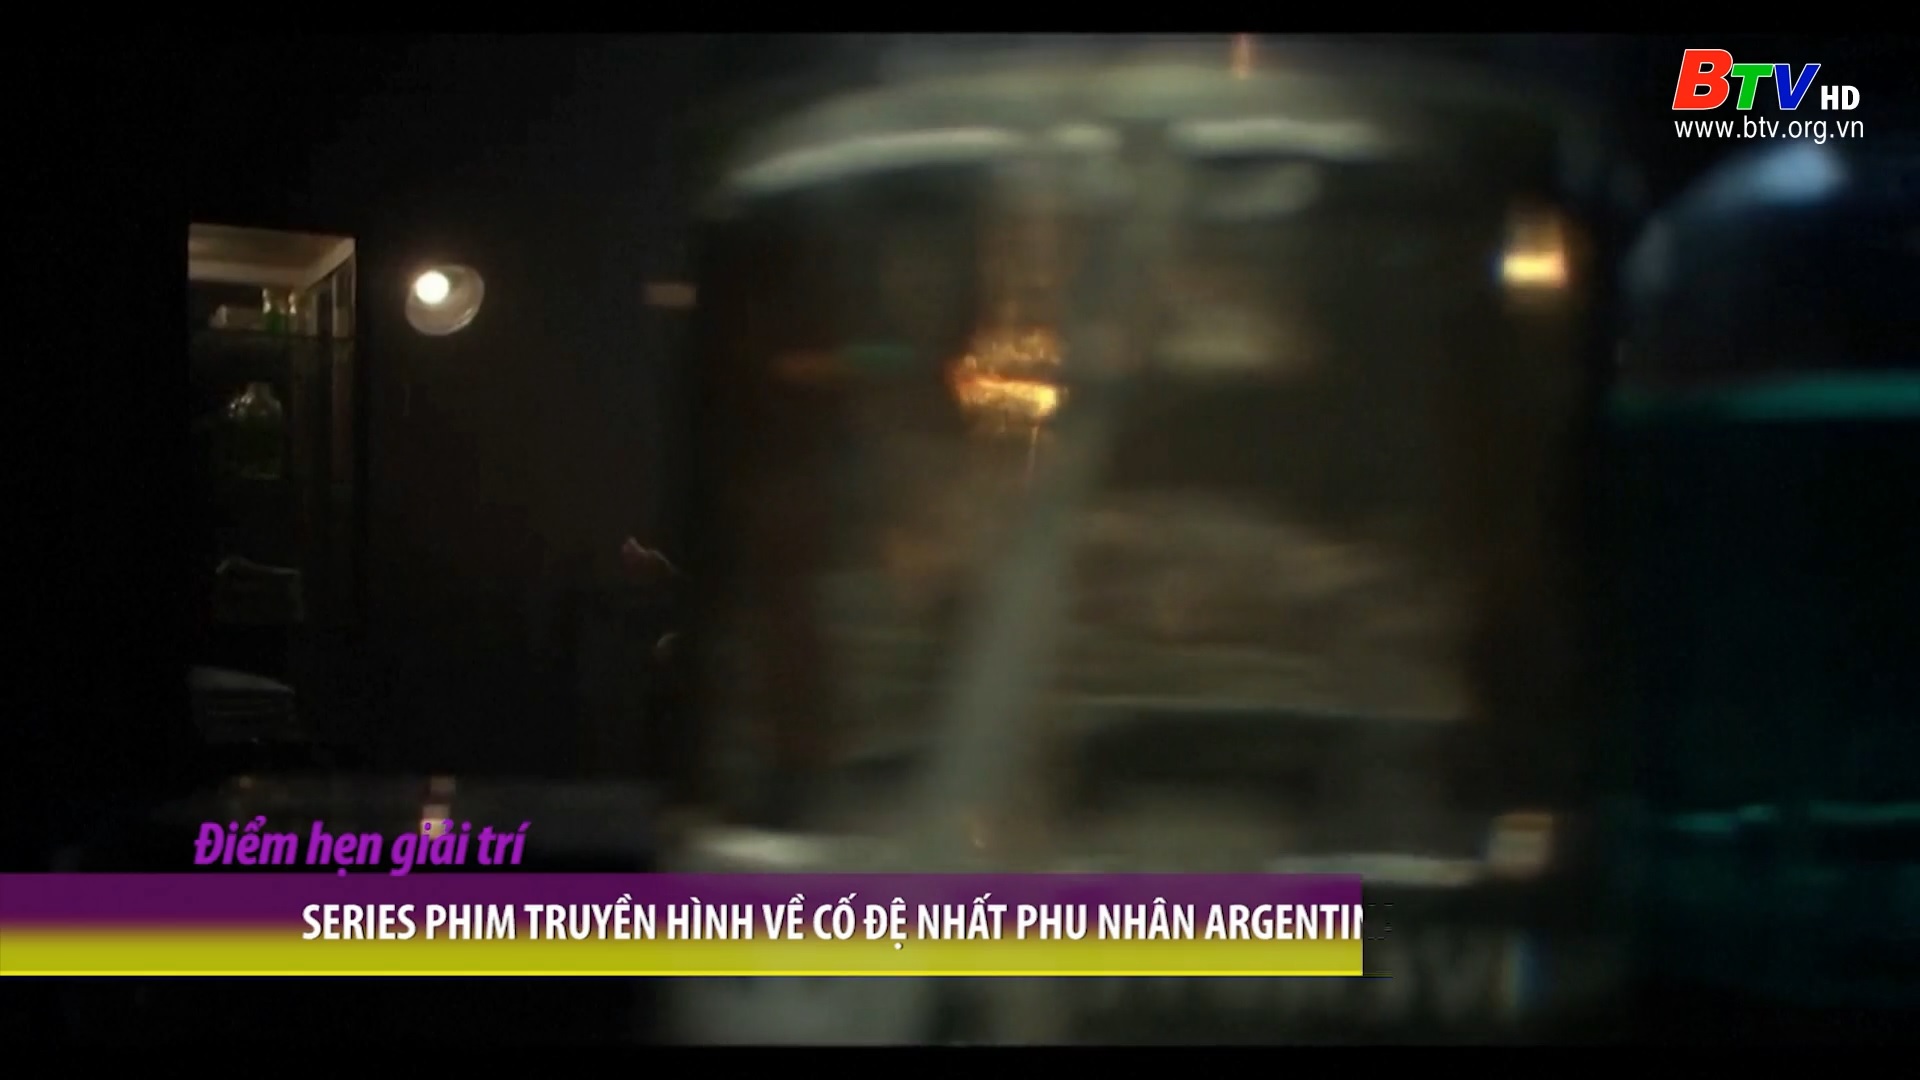 Series phim truyền hình về cố đệ nhất phu nhân Argentina Santa Evita